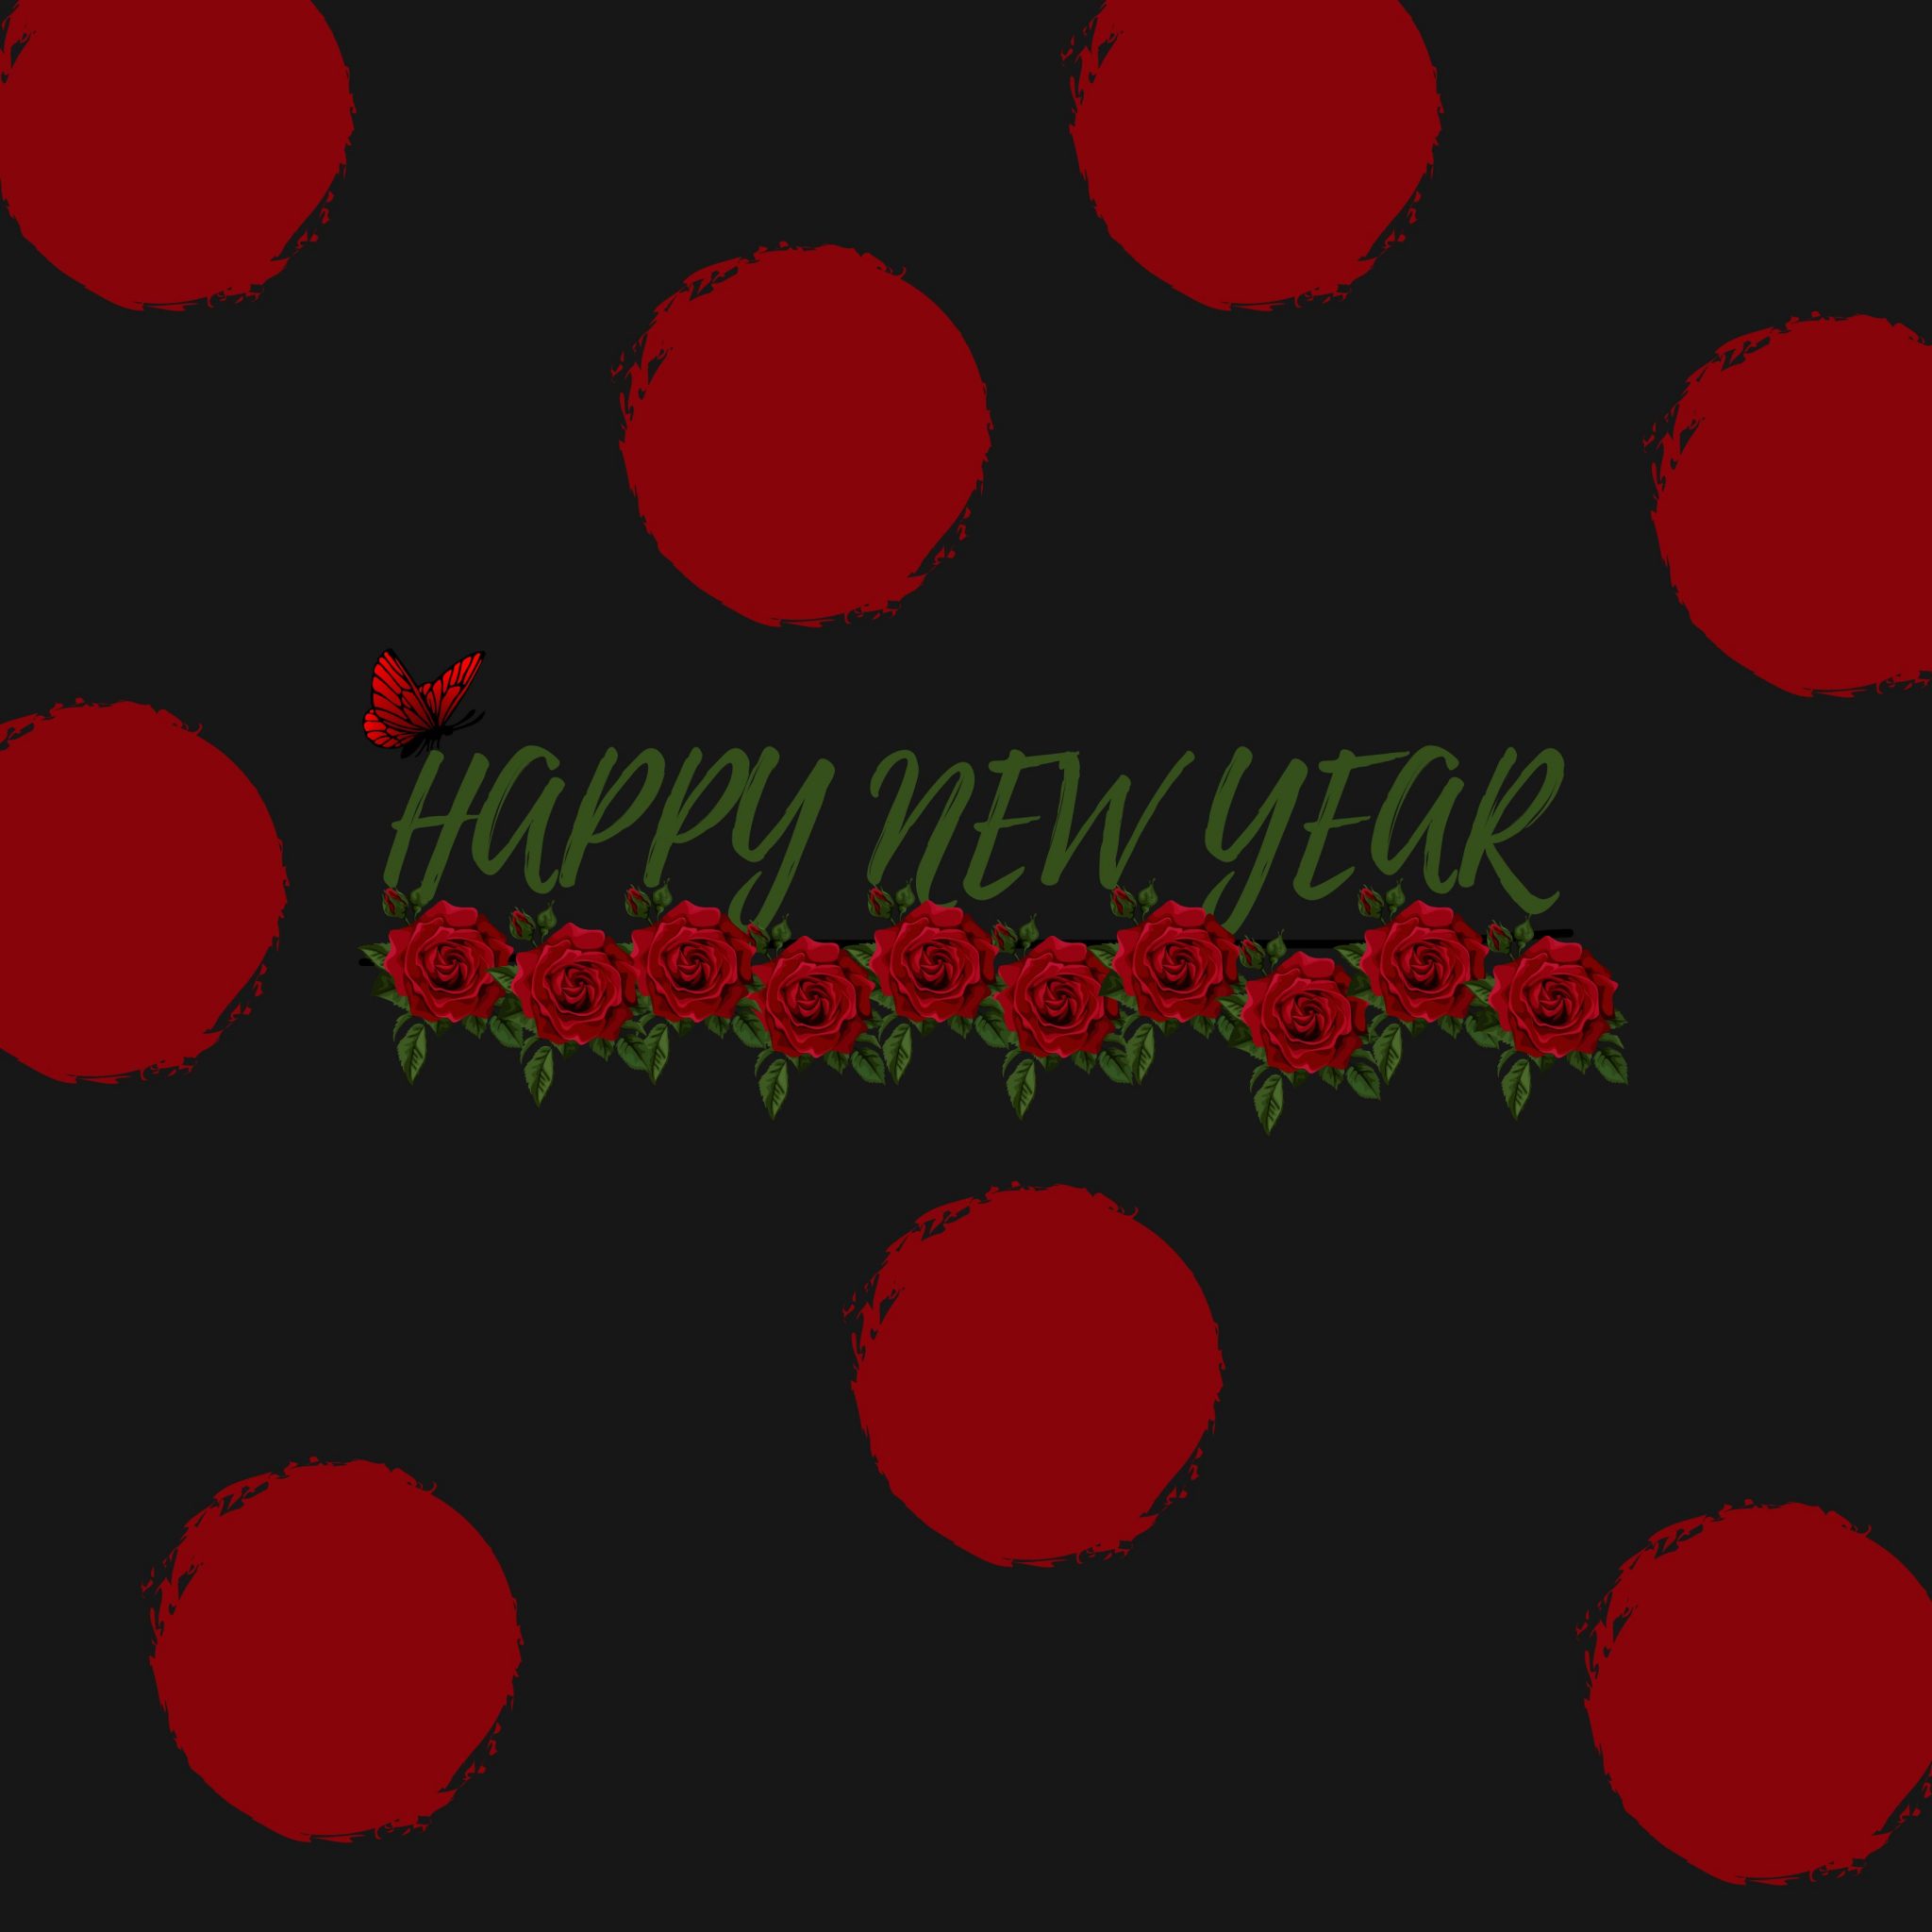 2048x2048 wallpapers iPad retina Red Poka Dot New Year Ipad Wallpaper 2048x2048 pixels resolution